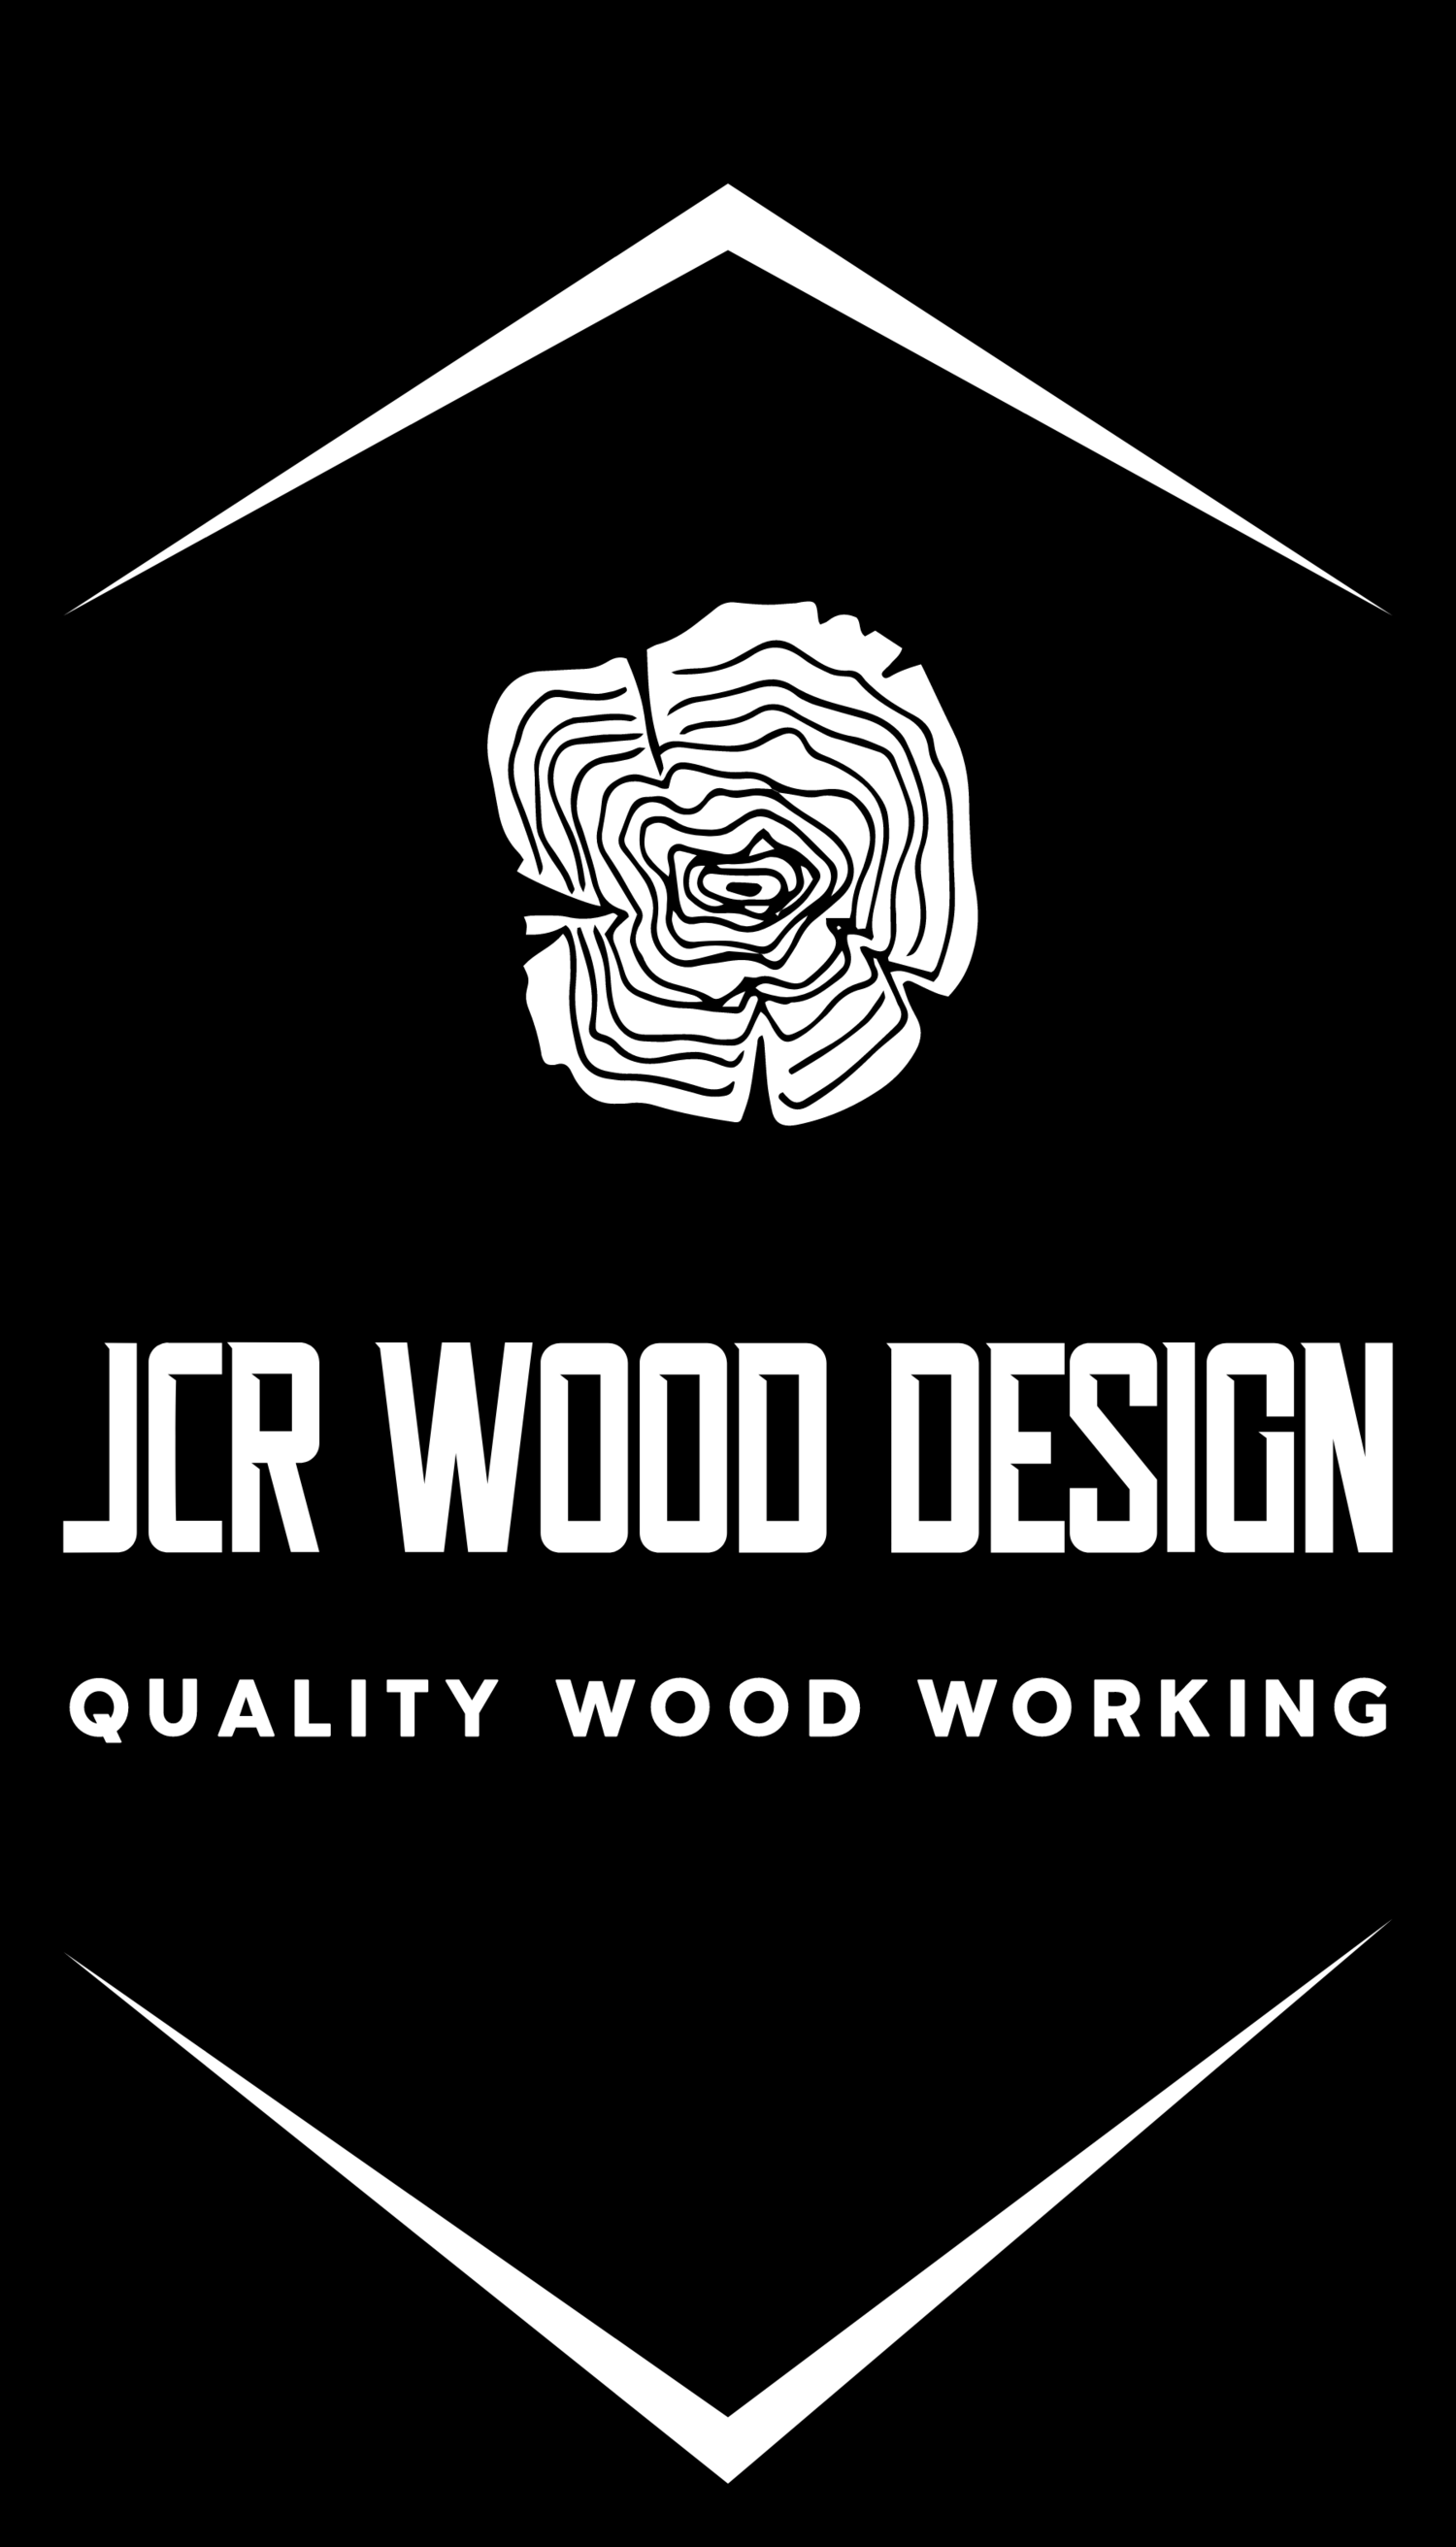 JCR WOOD DESIGN